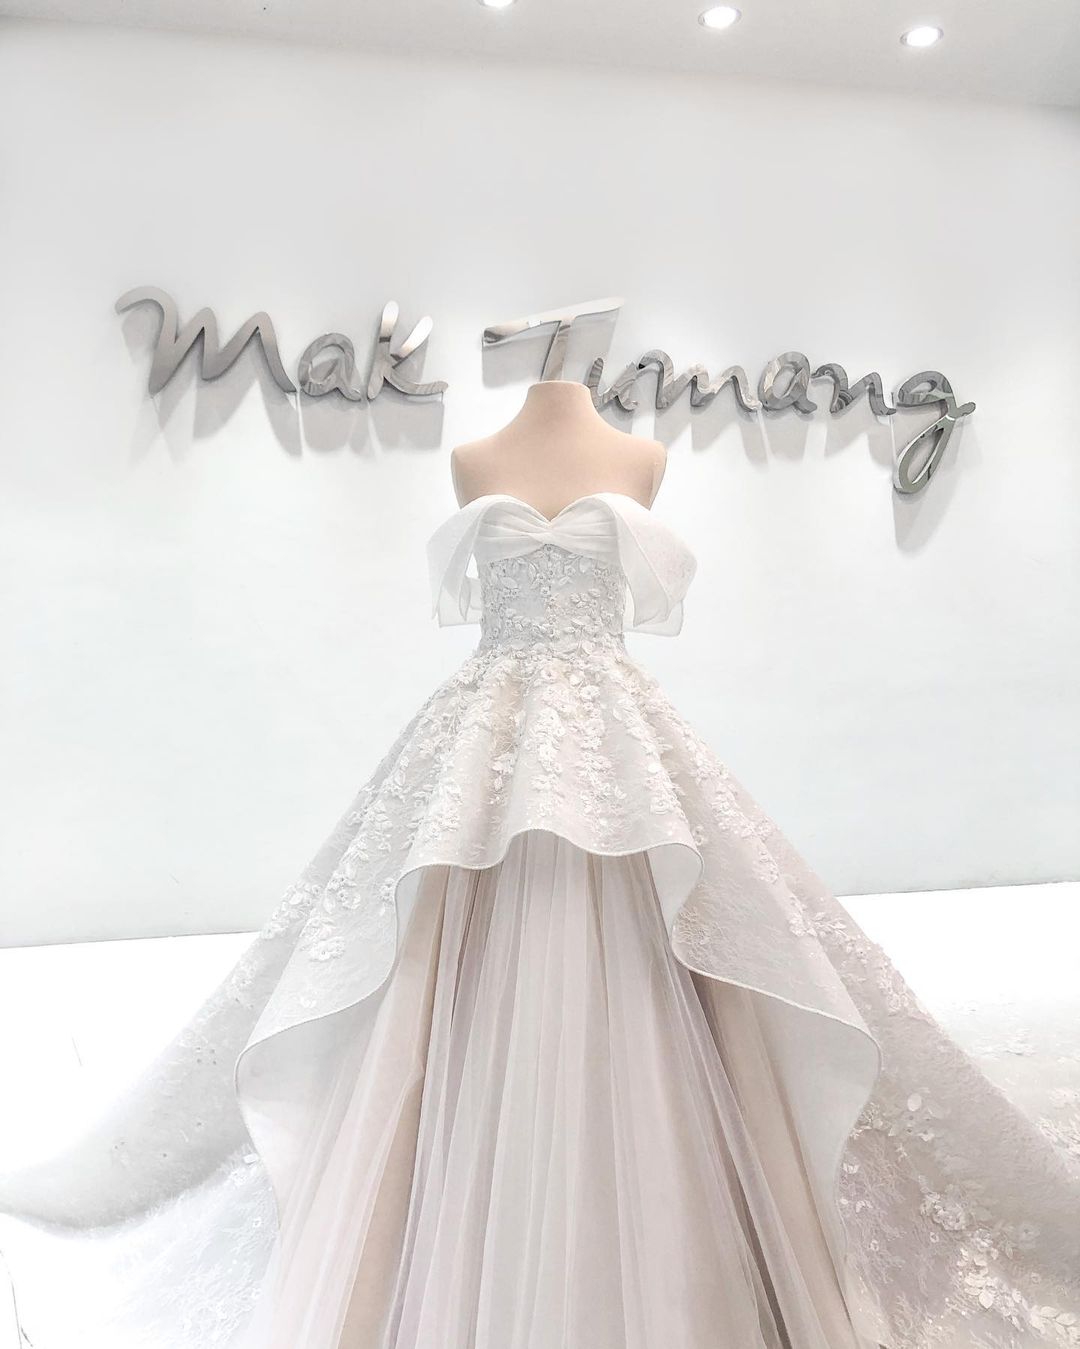 MAK TUMANG Bridal wedding